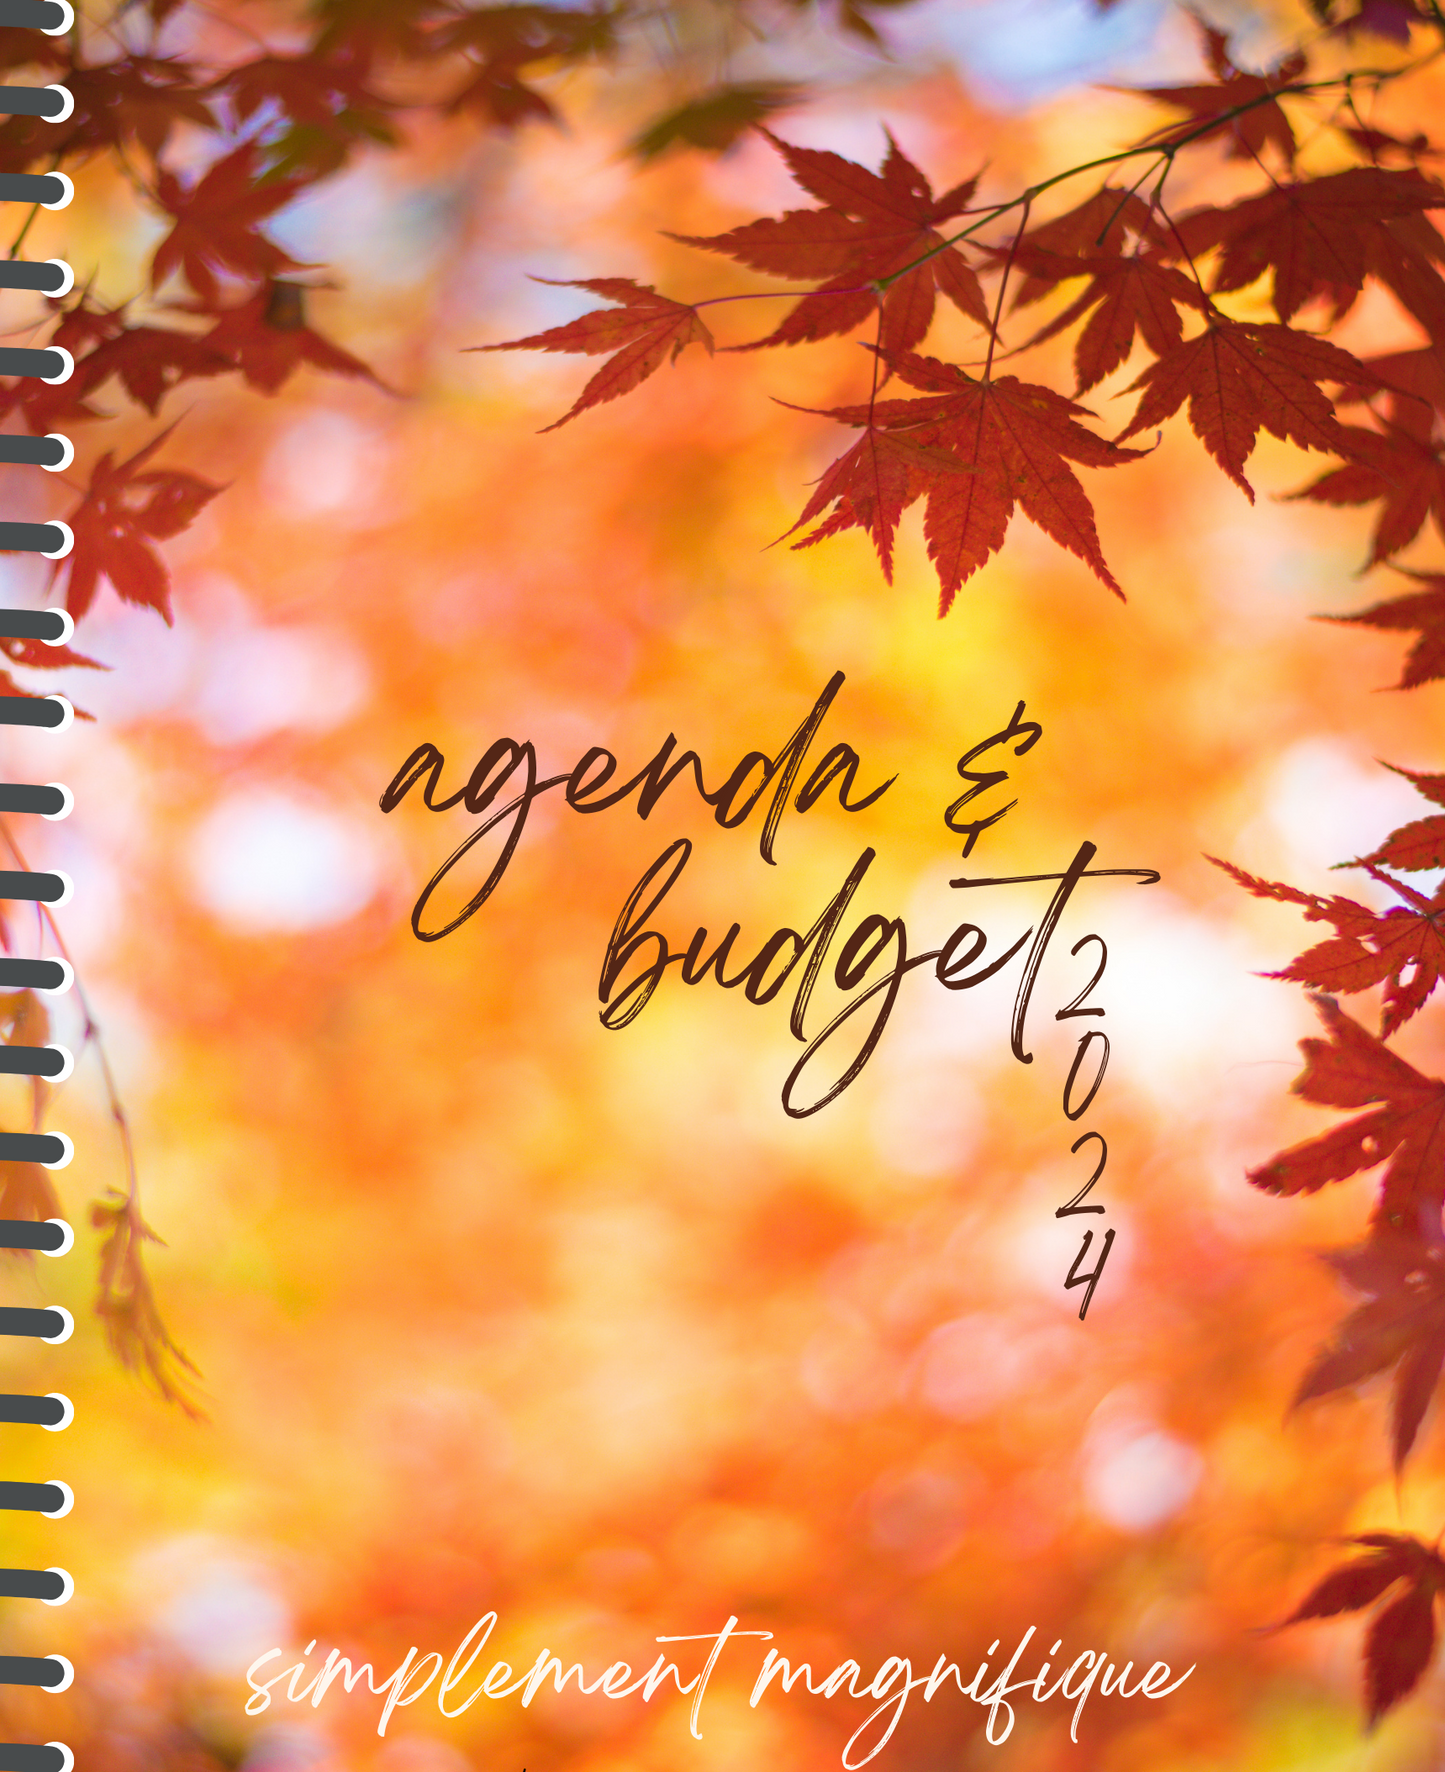 Agenda & budget #73